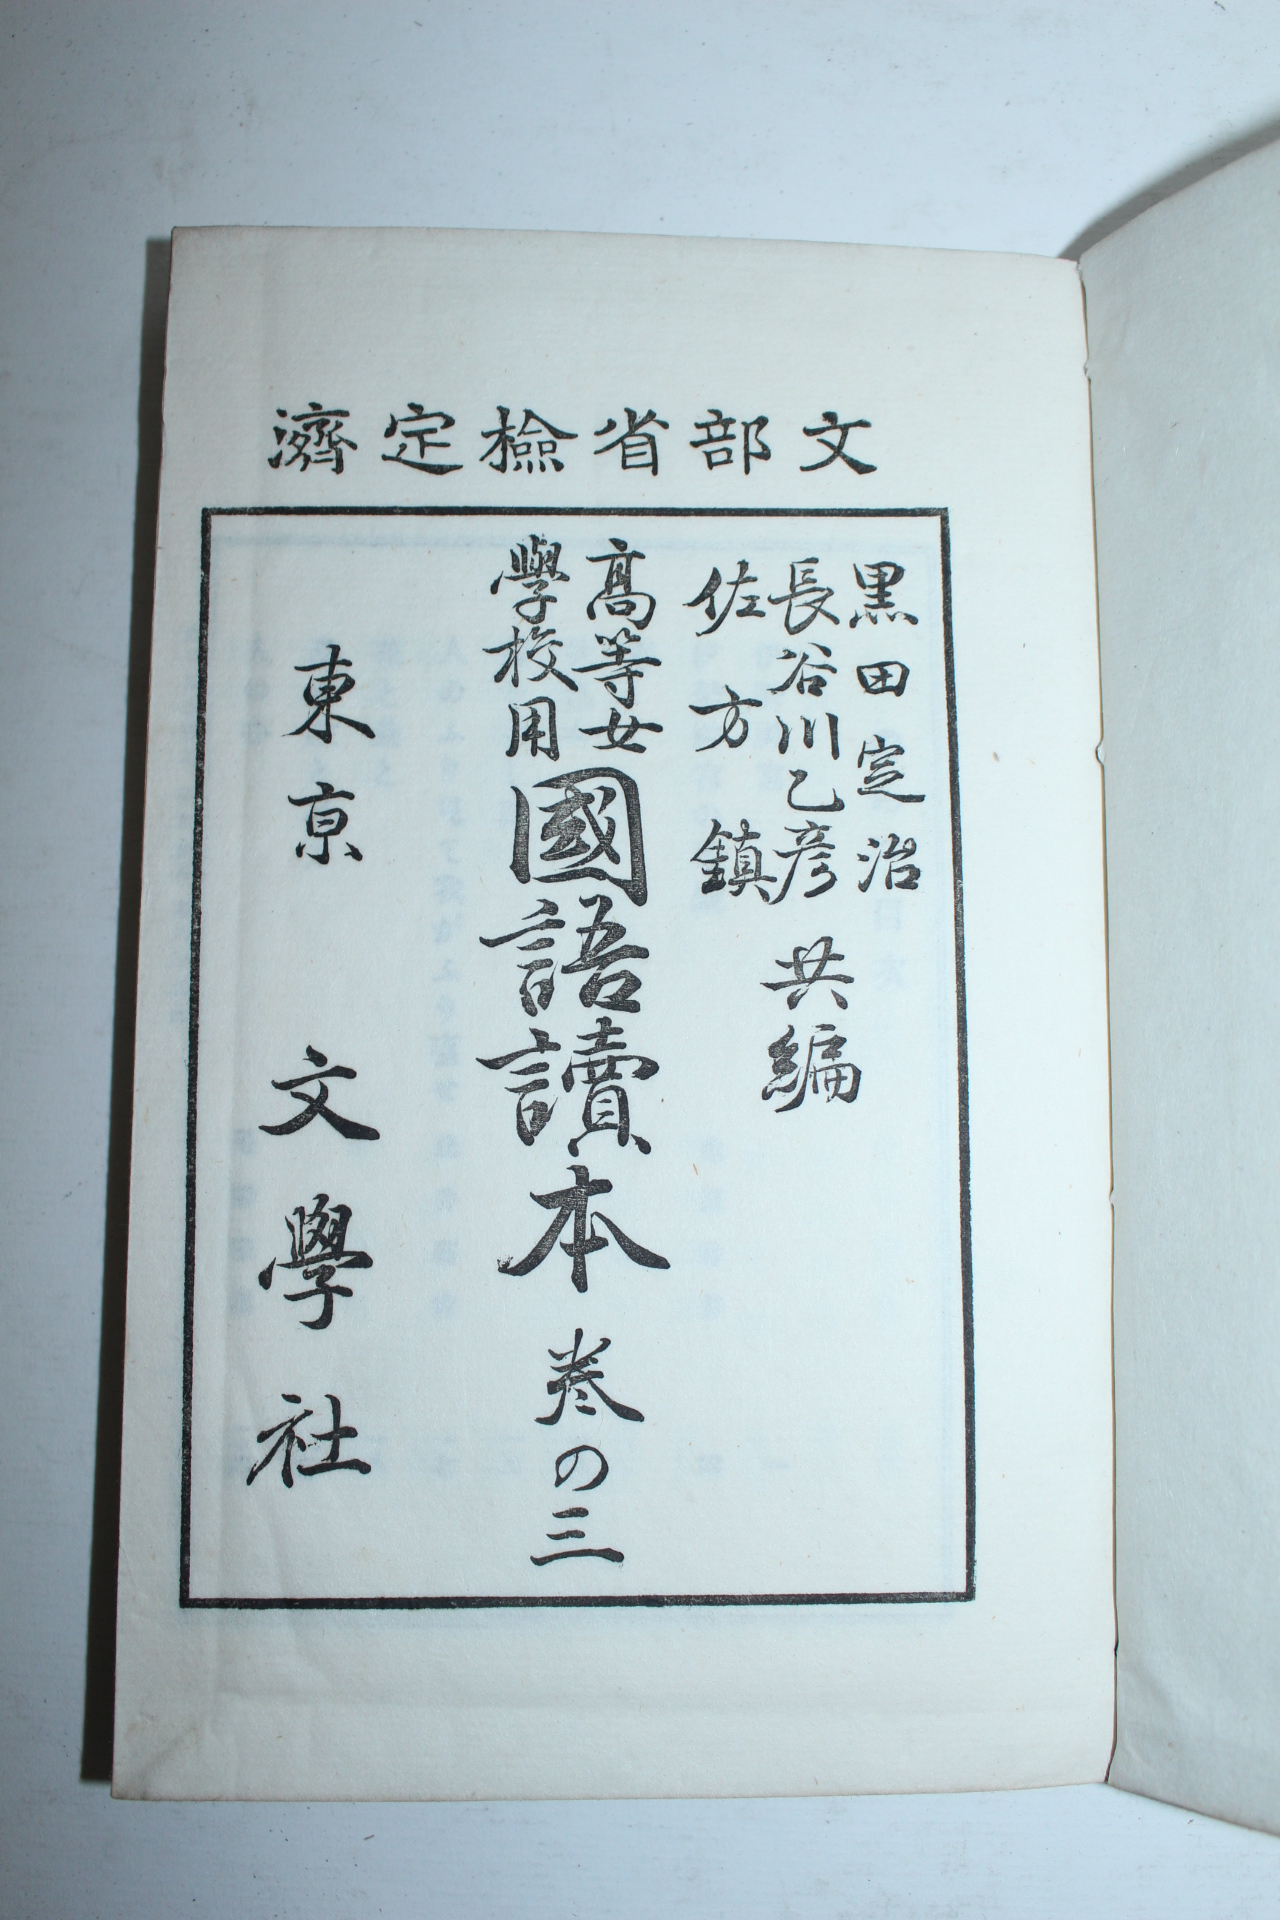 1903년(명치36년) 일본간행 고등여학교용 국어독본(國語讀本) 7책